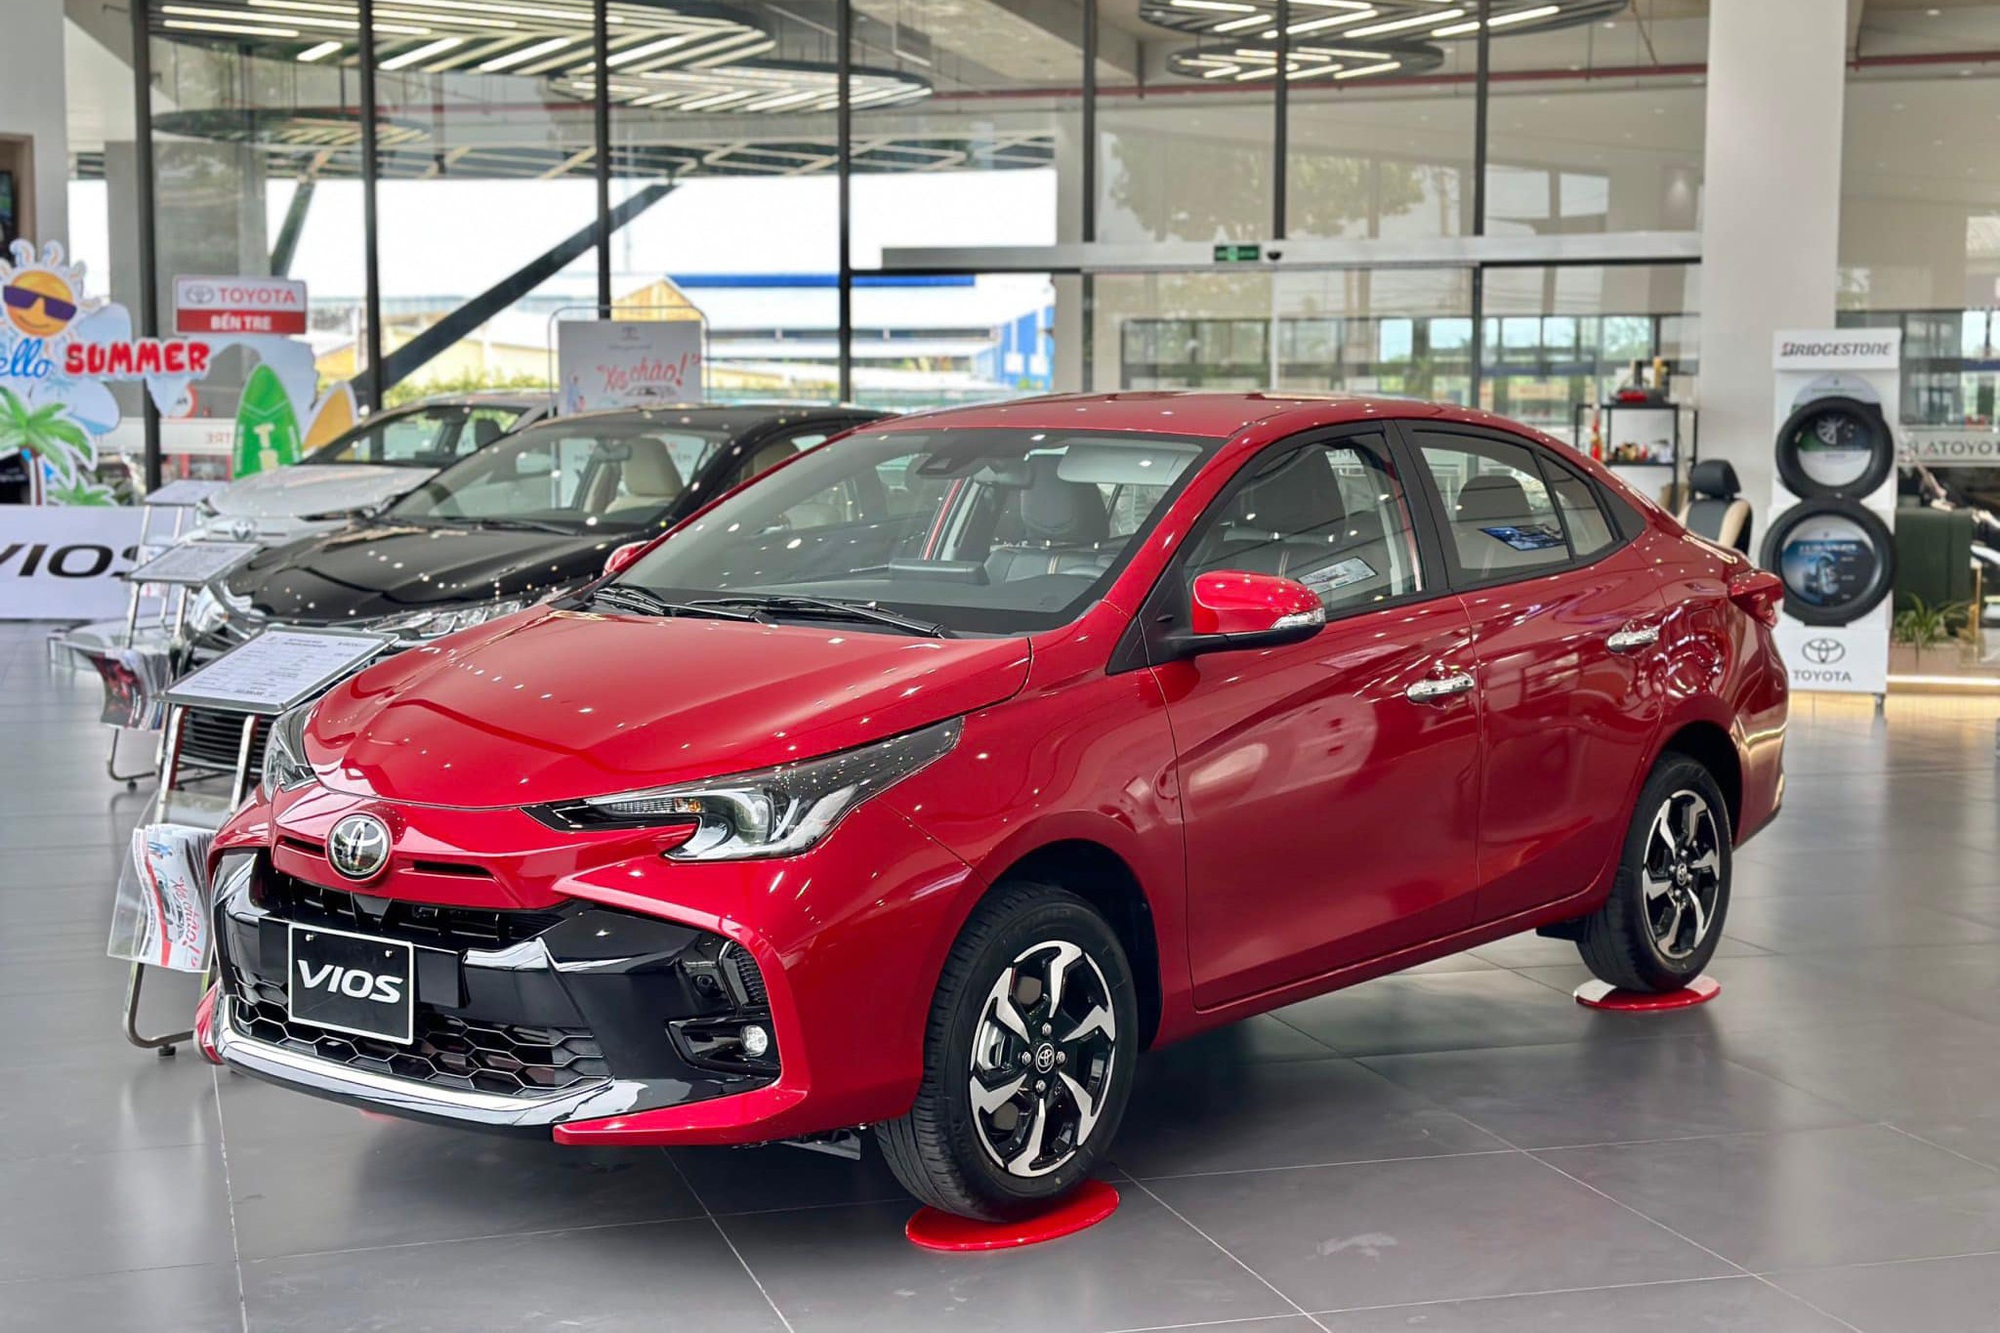 Toyota Vios bán lẫn lộn cũ mới: Bản cũ giảm 110 triệu xả hàng, bản mới ưu đãi lớn chưa từng có - Ảnh 2.